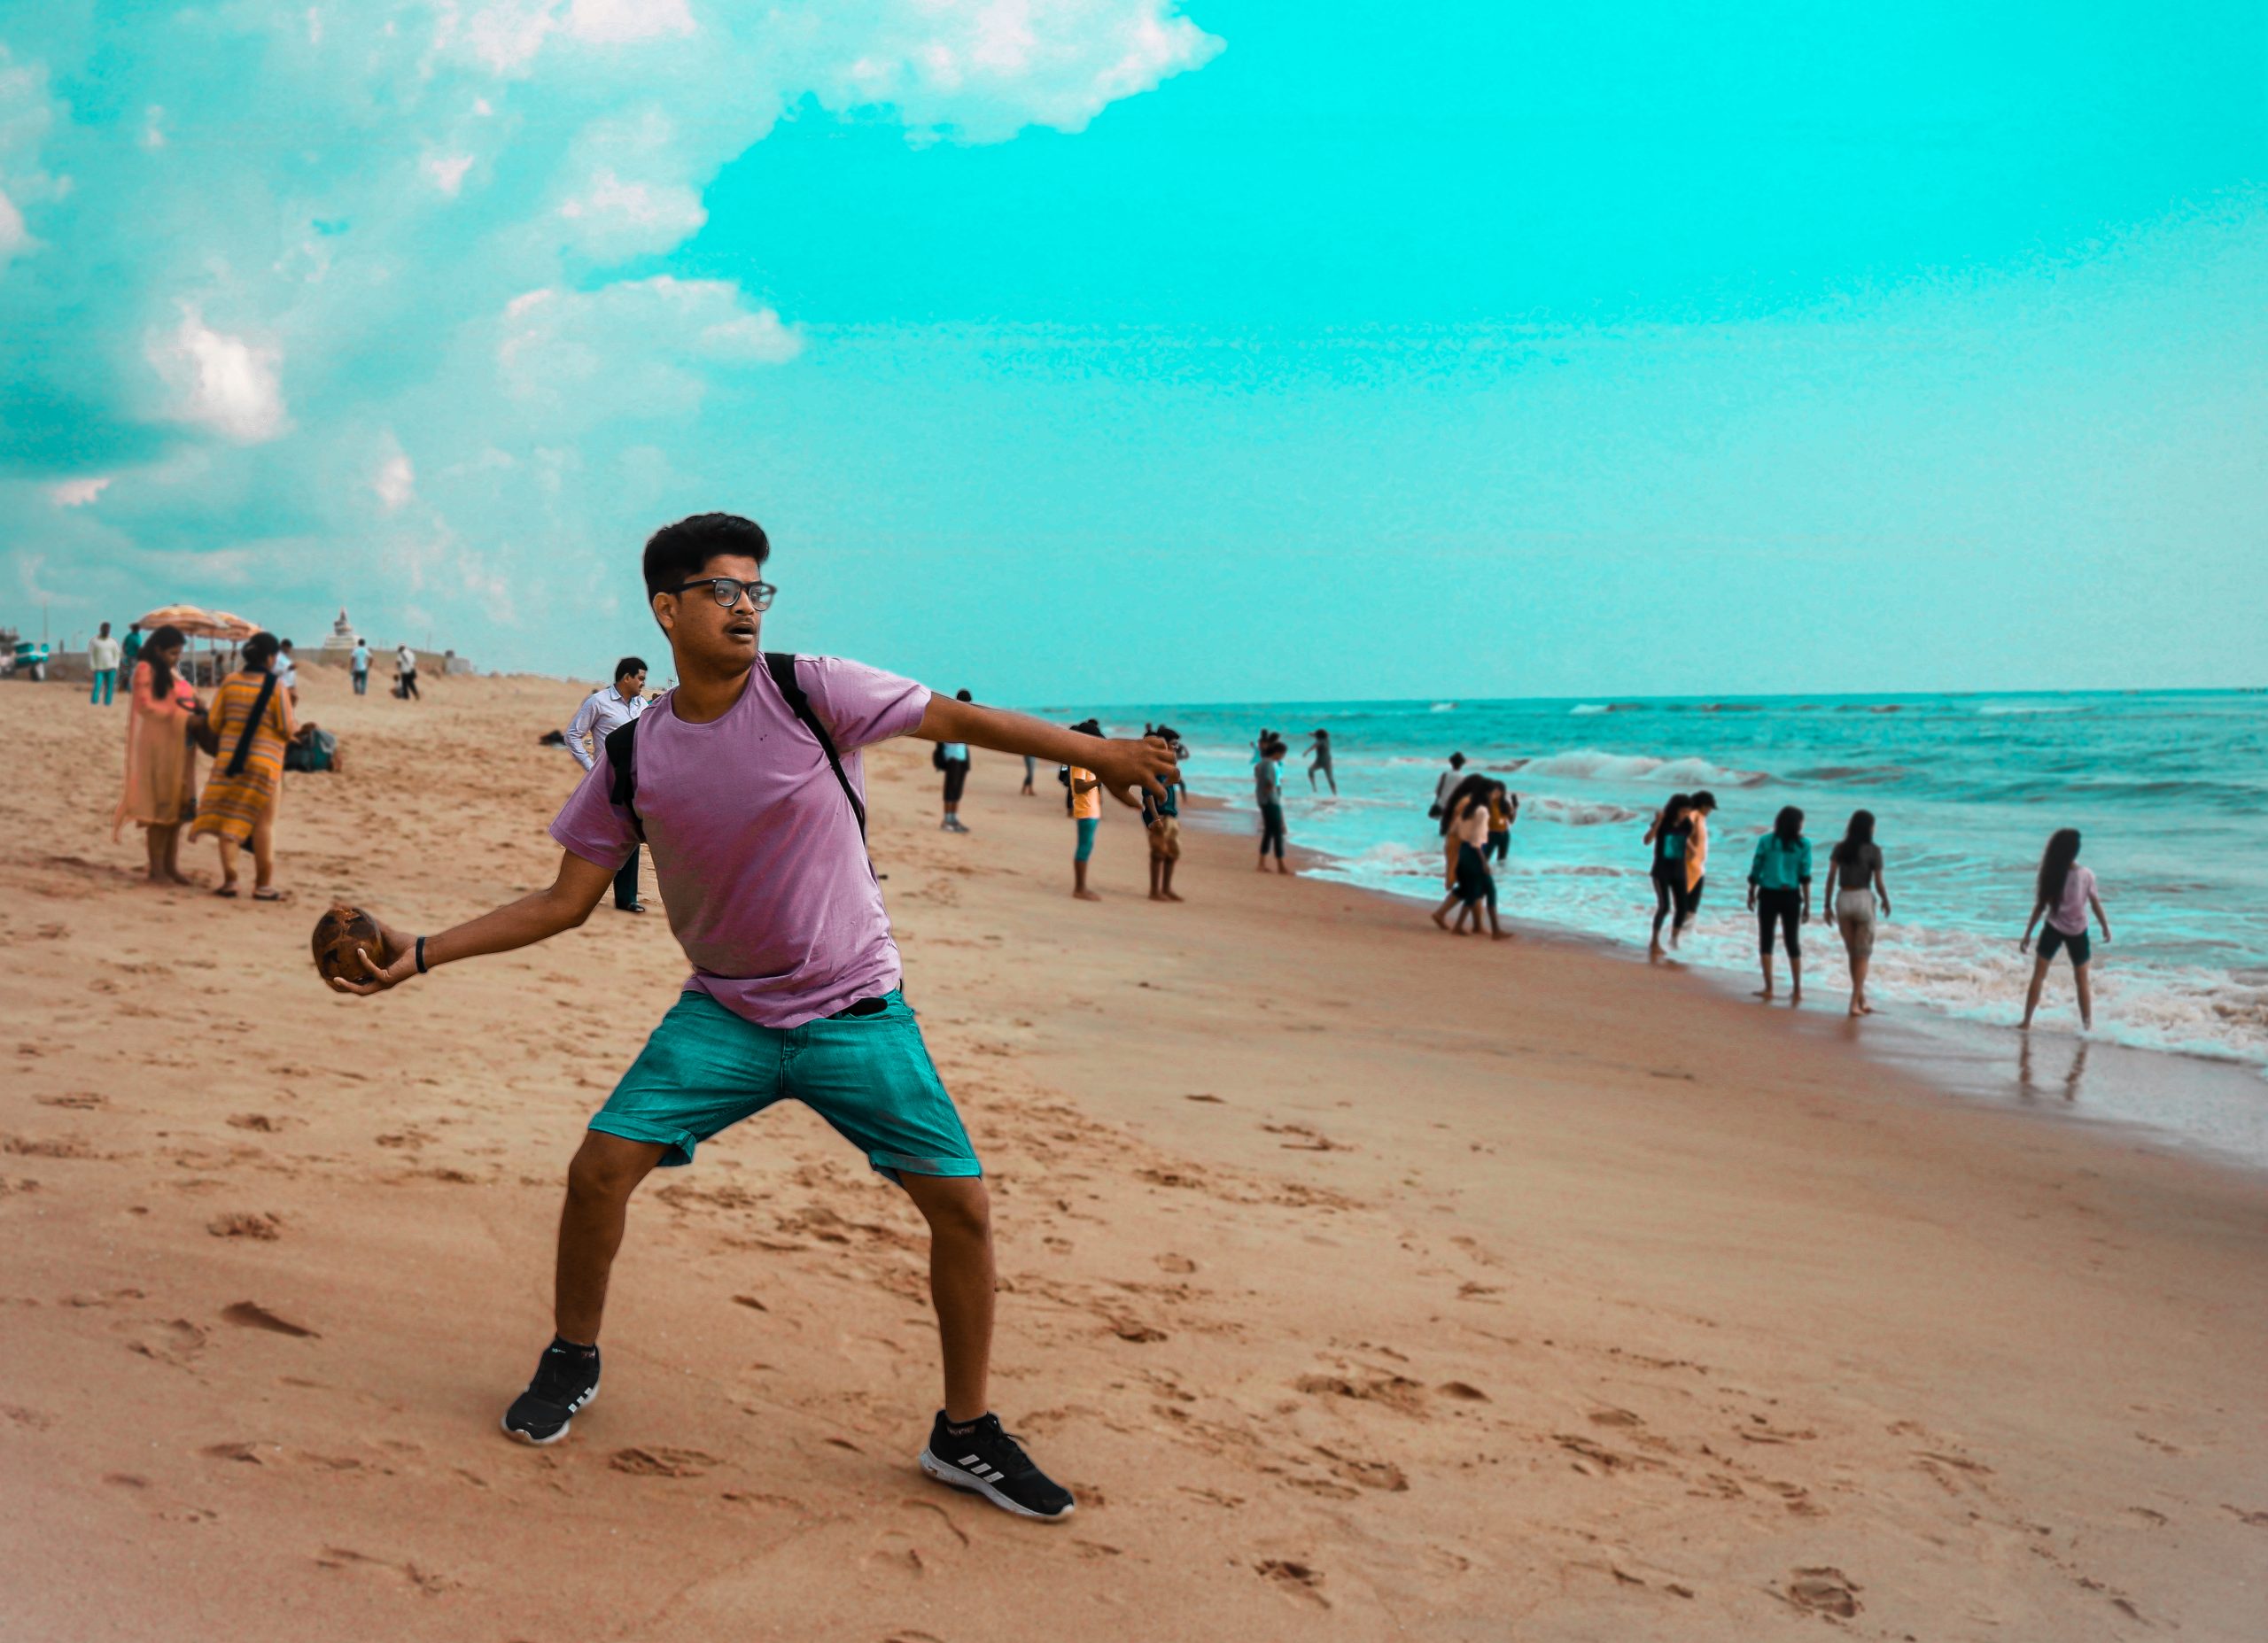 A boy throwing stone at a beach